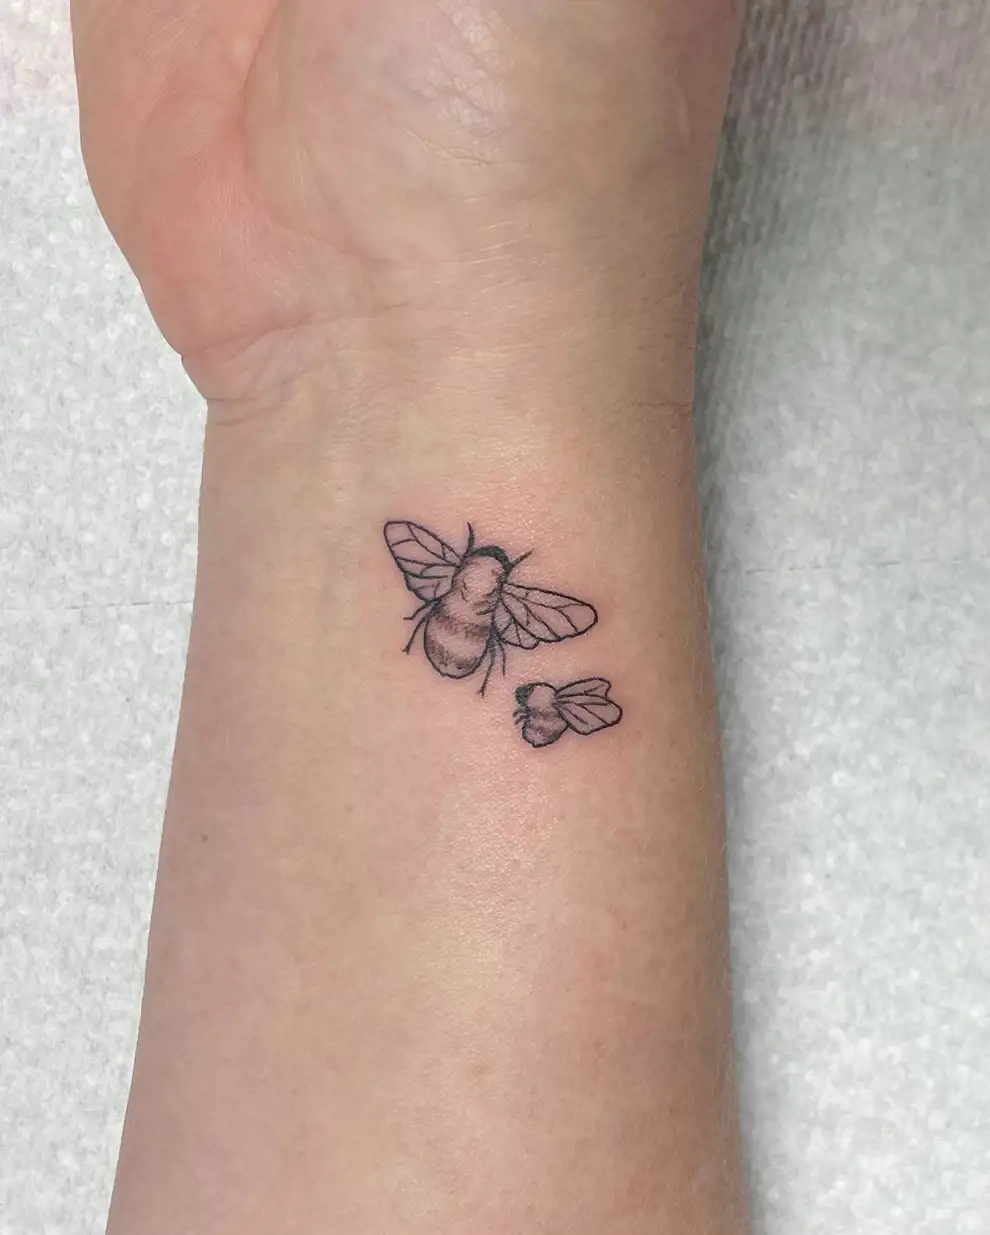 Tatuajes madre e hija: pareja de abejas